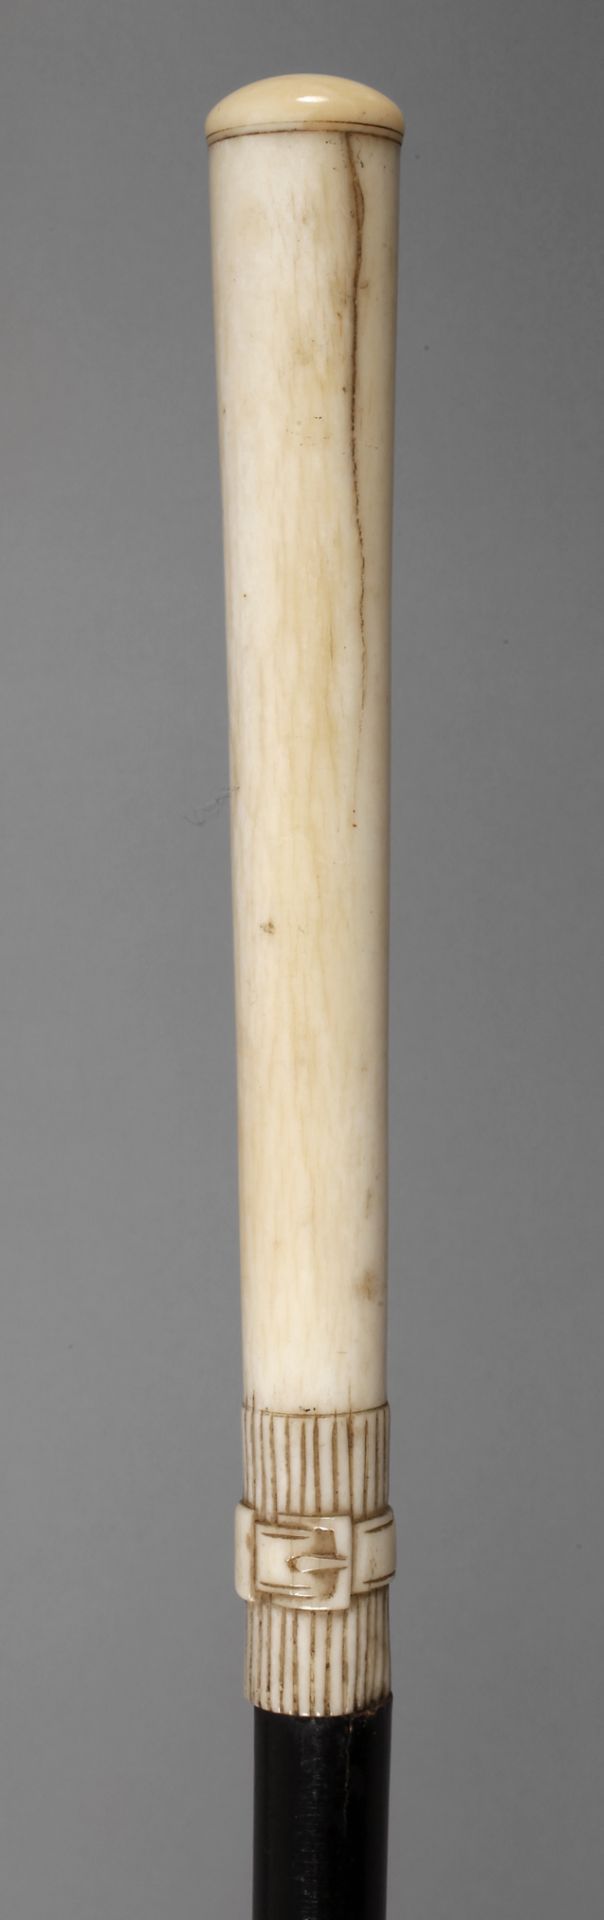 Spazierstock Elfenbein 19. Jh., hoher, leicht konisch zulaufender Knauf aus beschnitztem